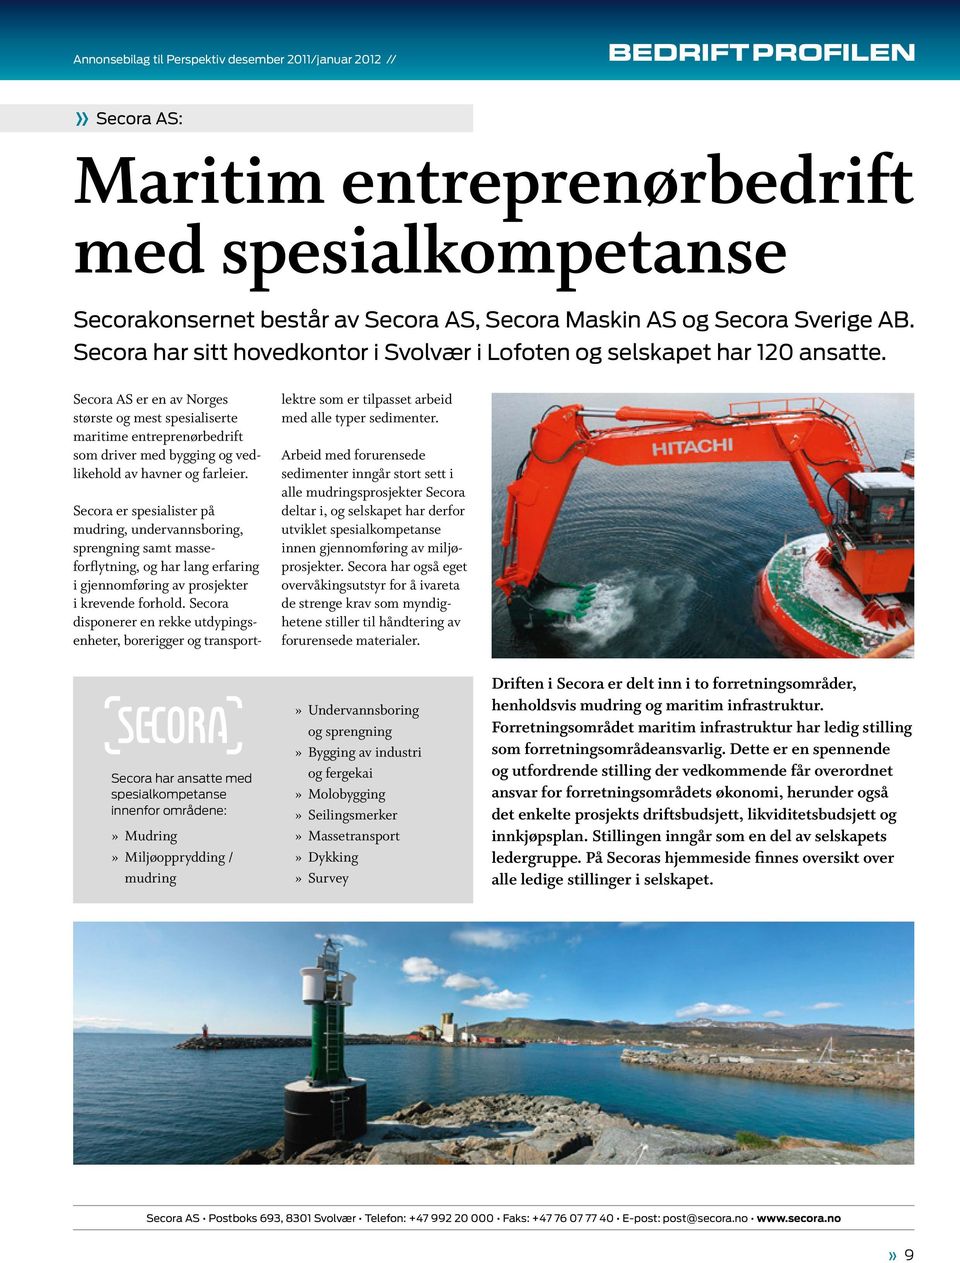 Secora AS er en av Norges største og mest spesialiserte maritime entreprenørbedrift som driver med bygging og vedlikehold av havner og farleier.